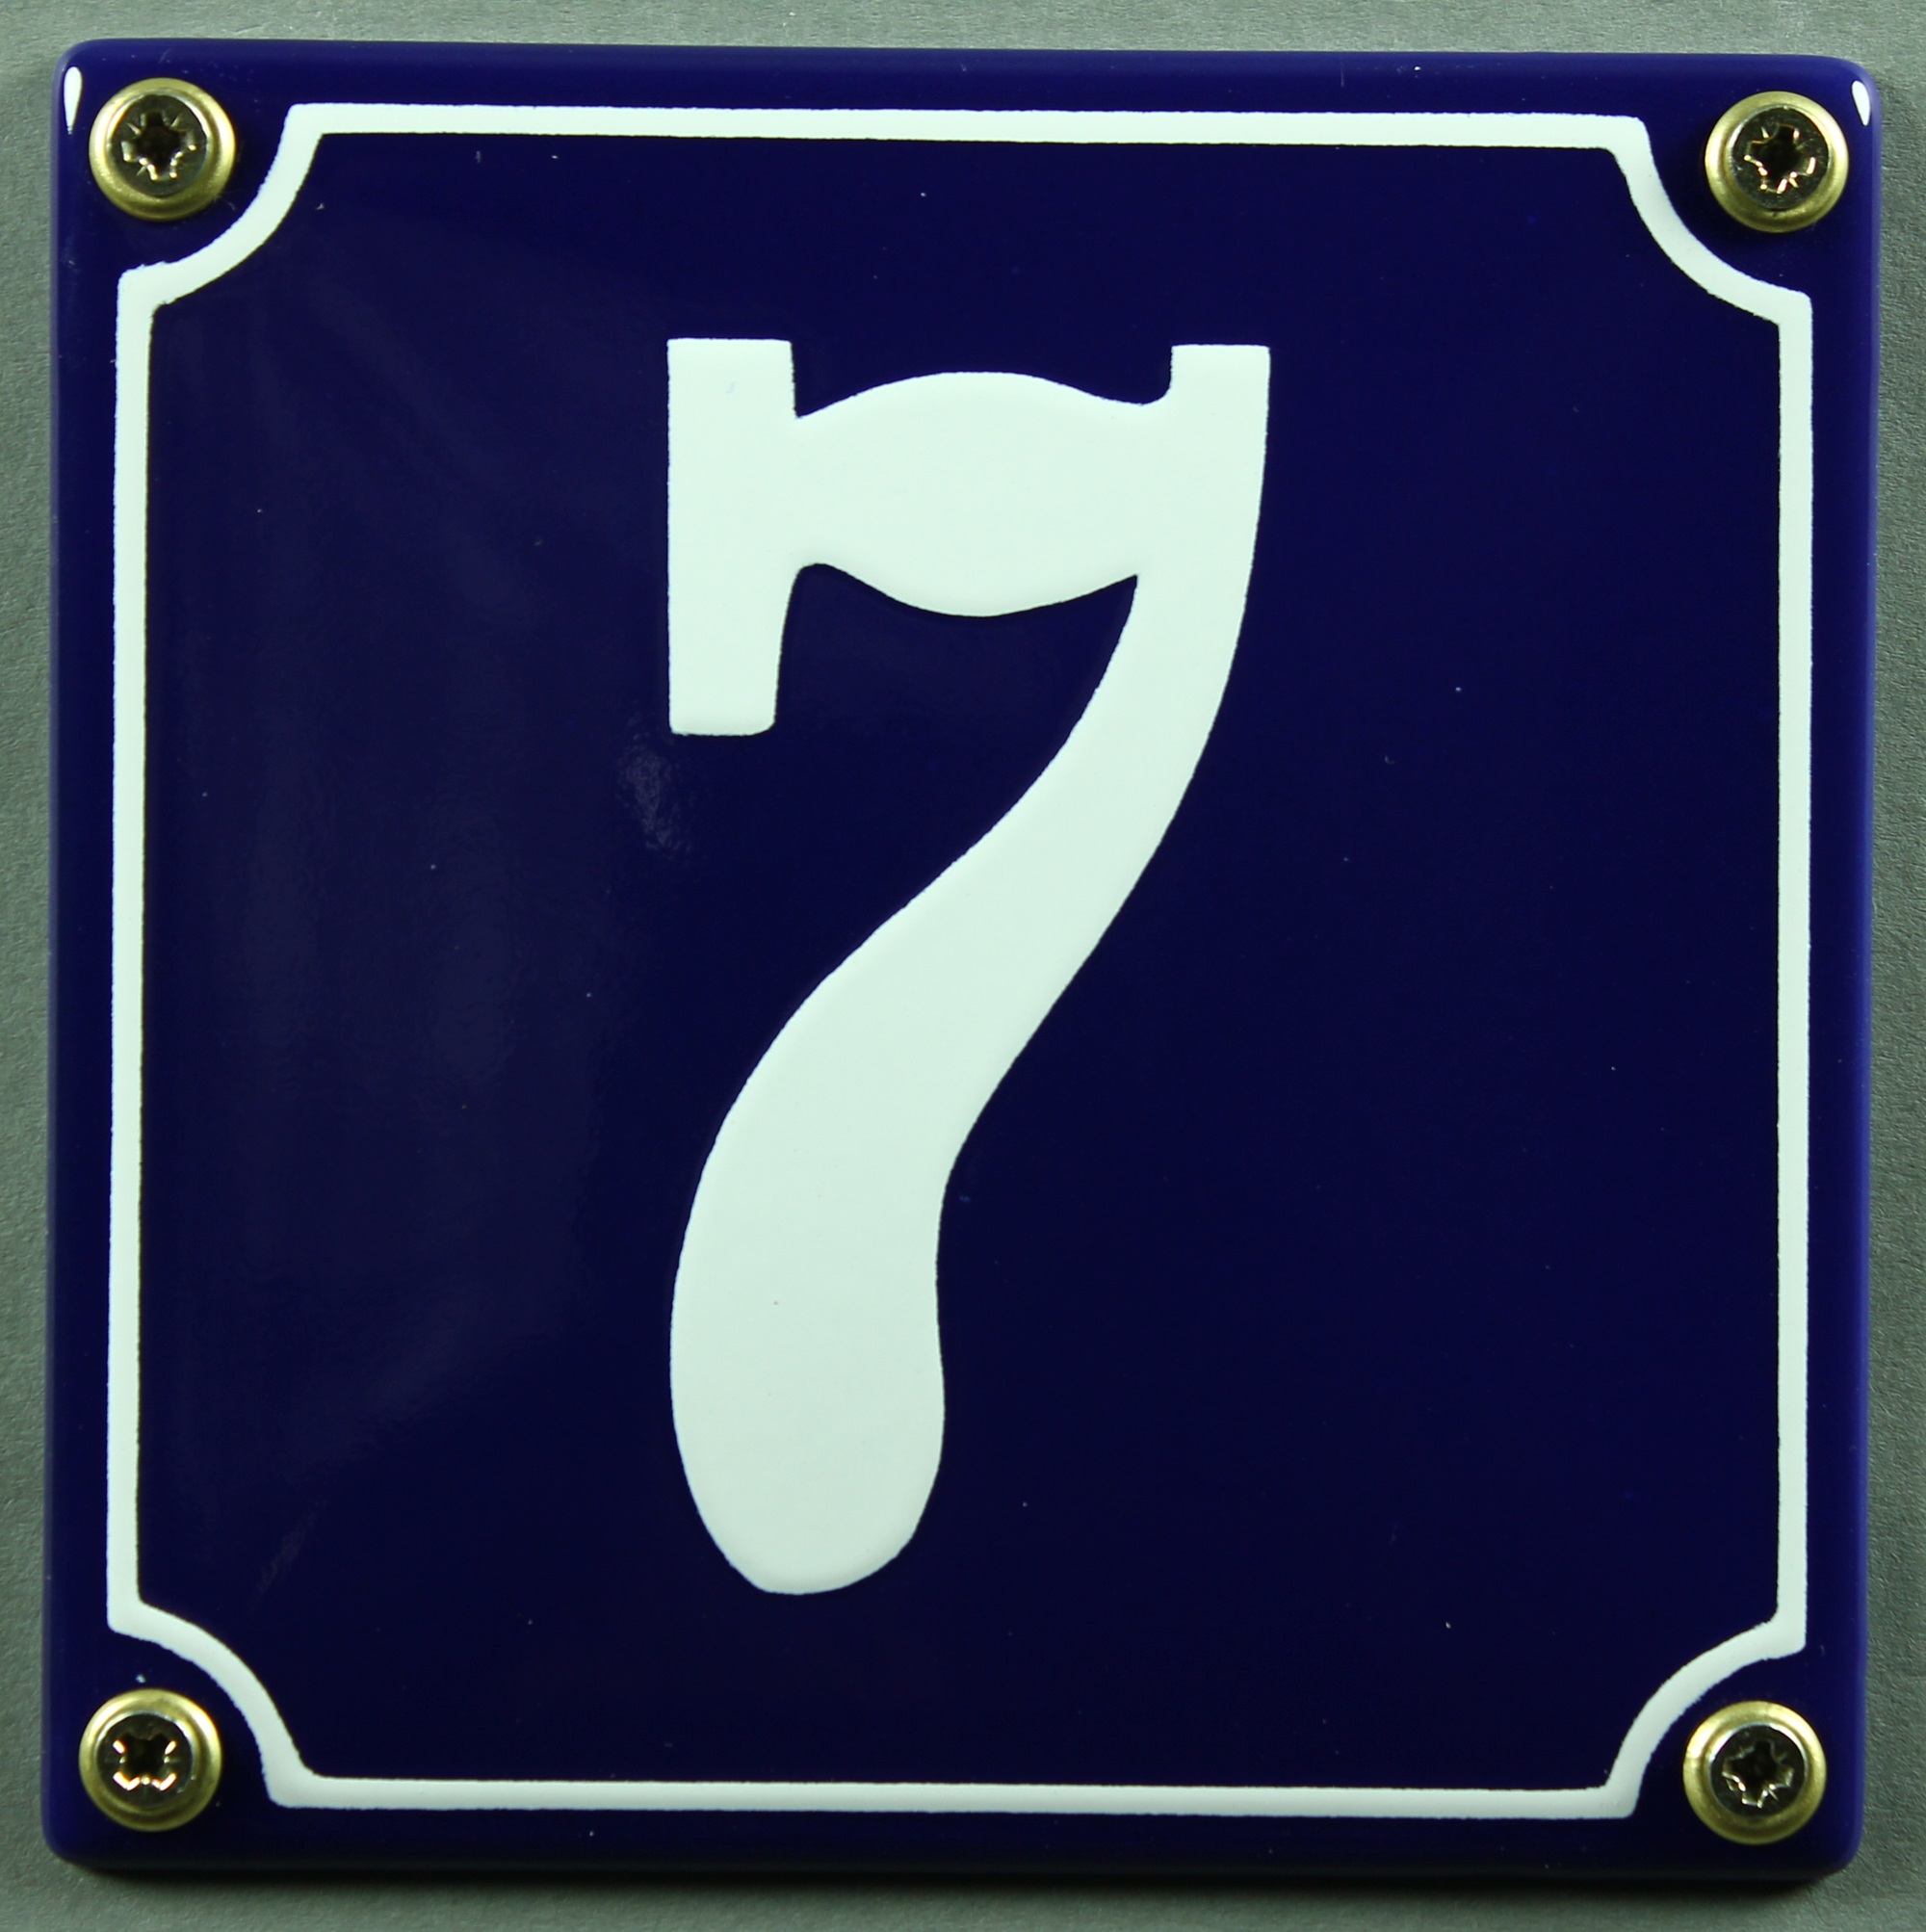 Emaille Hausnummernschild Hausnummer Schild wetterfest und lichtecht 1 blau/weiß 12x12cm Zahlen 1 bis 30 verfügbar Wählen Sie Ihre Nummer blau/weiß 12x12 cm und 12x14cm sofort lieferbar